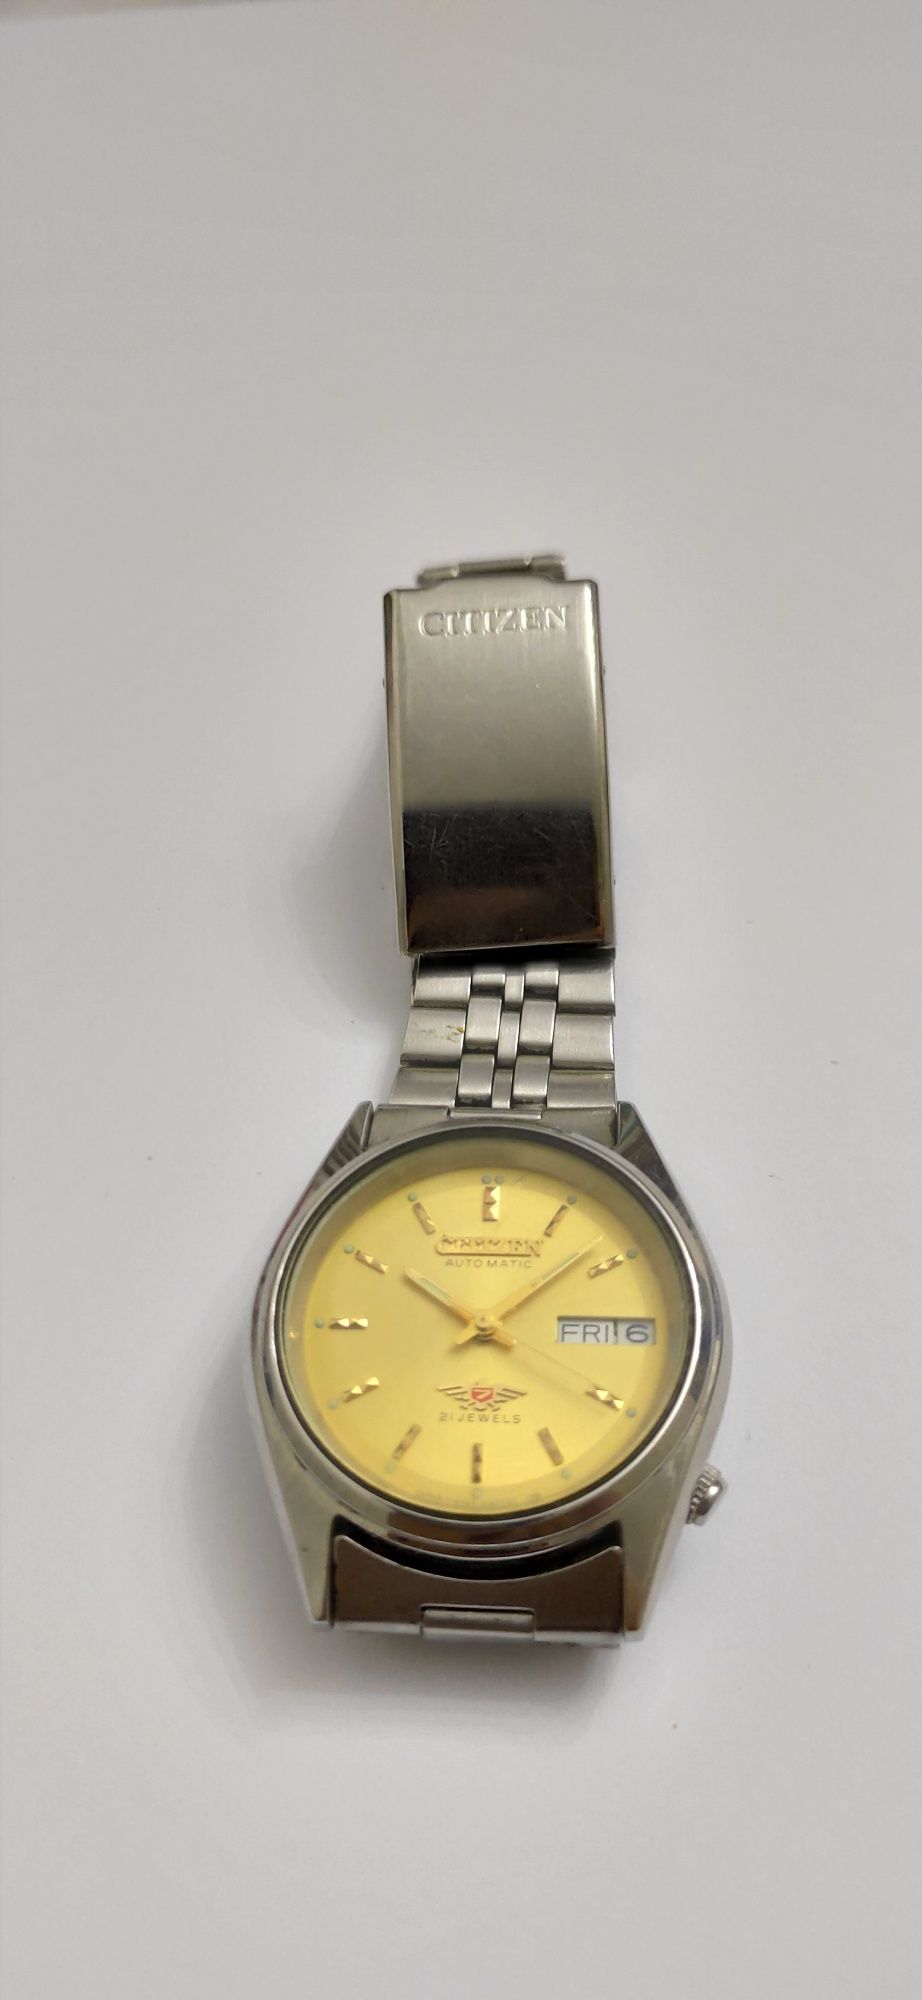 Срочно продаю японские часы оригинал ."Citizen" оригинал.